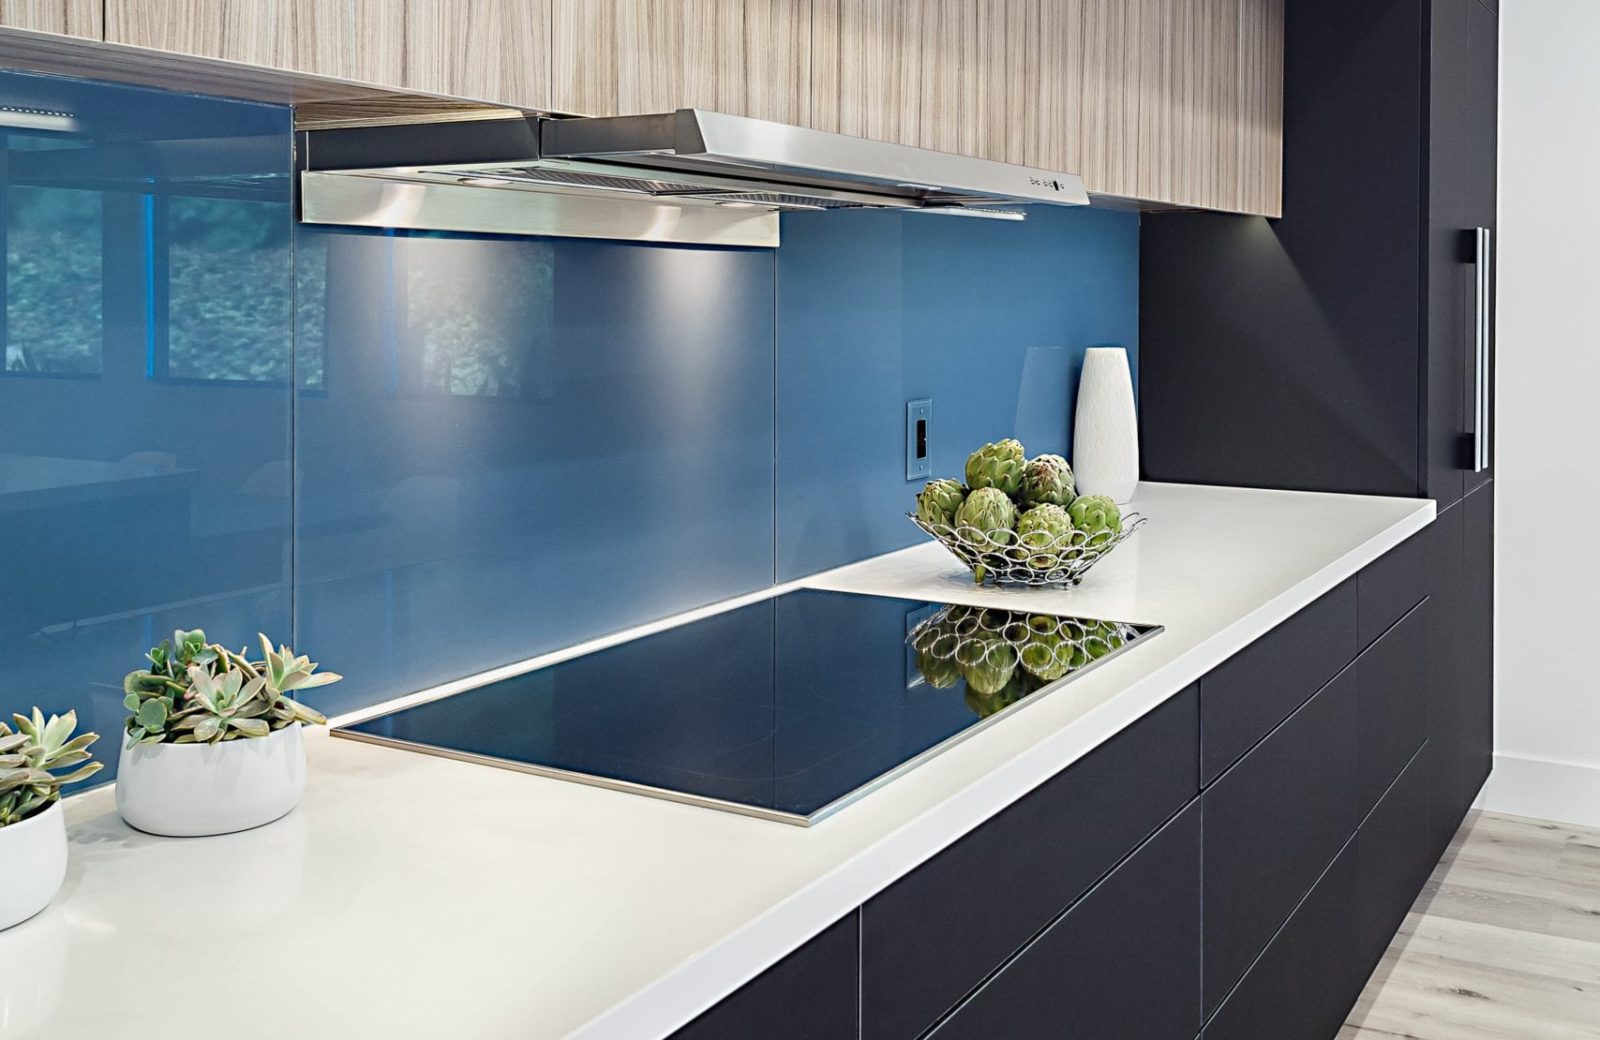 Matte black cabinets and blue soda glass backsplash